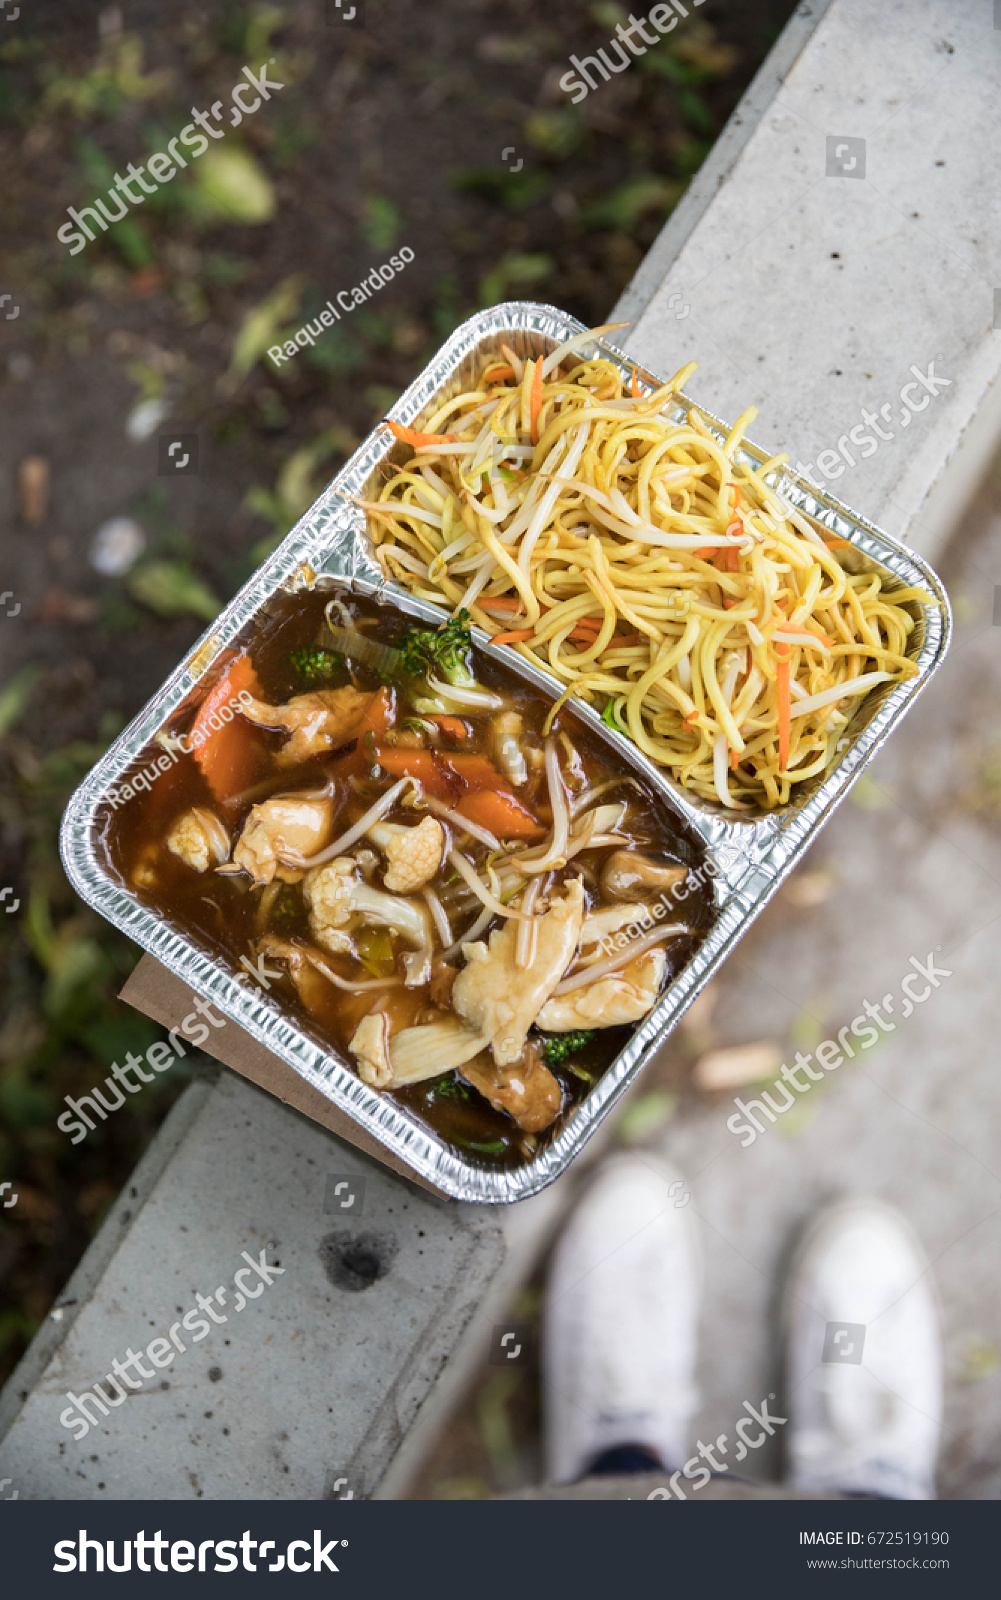 Asian street meat in Berlin